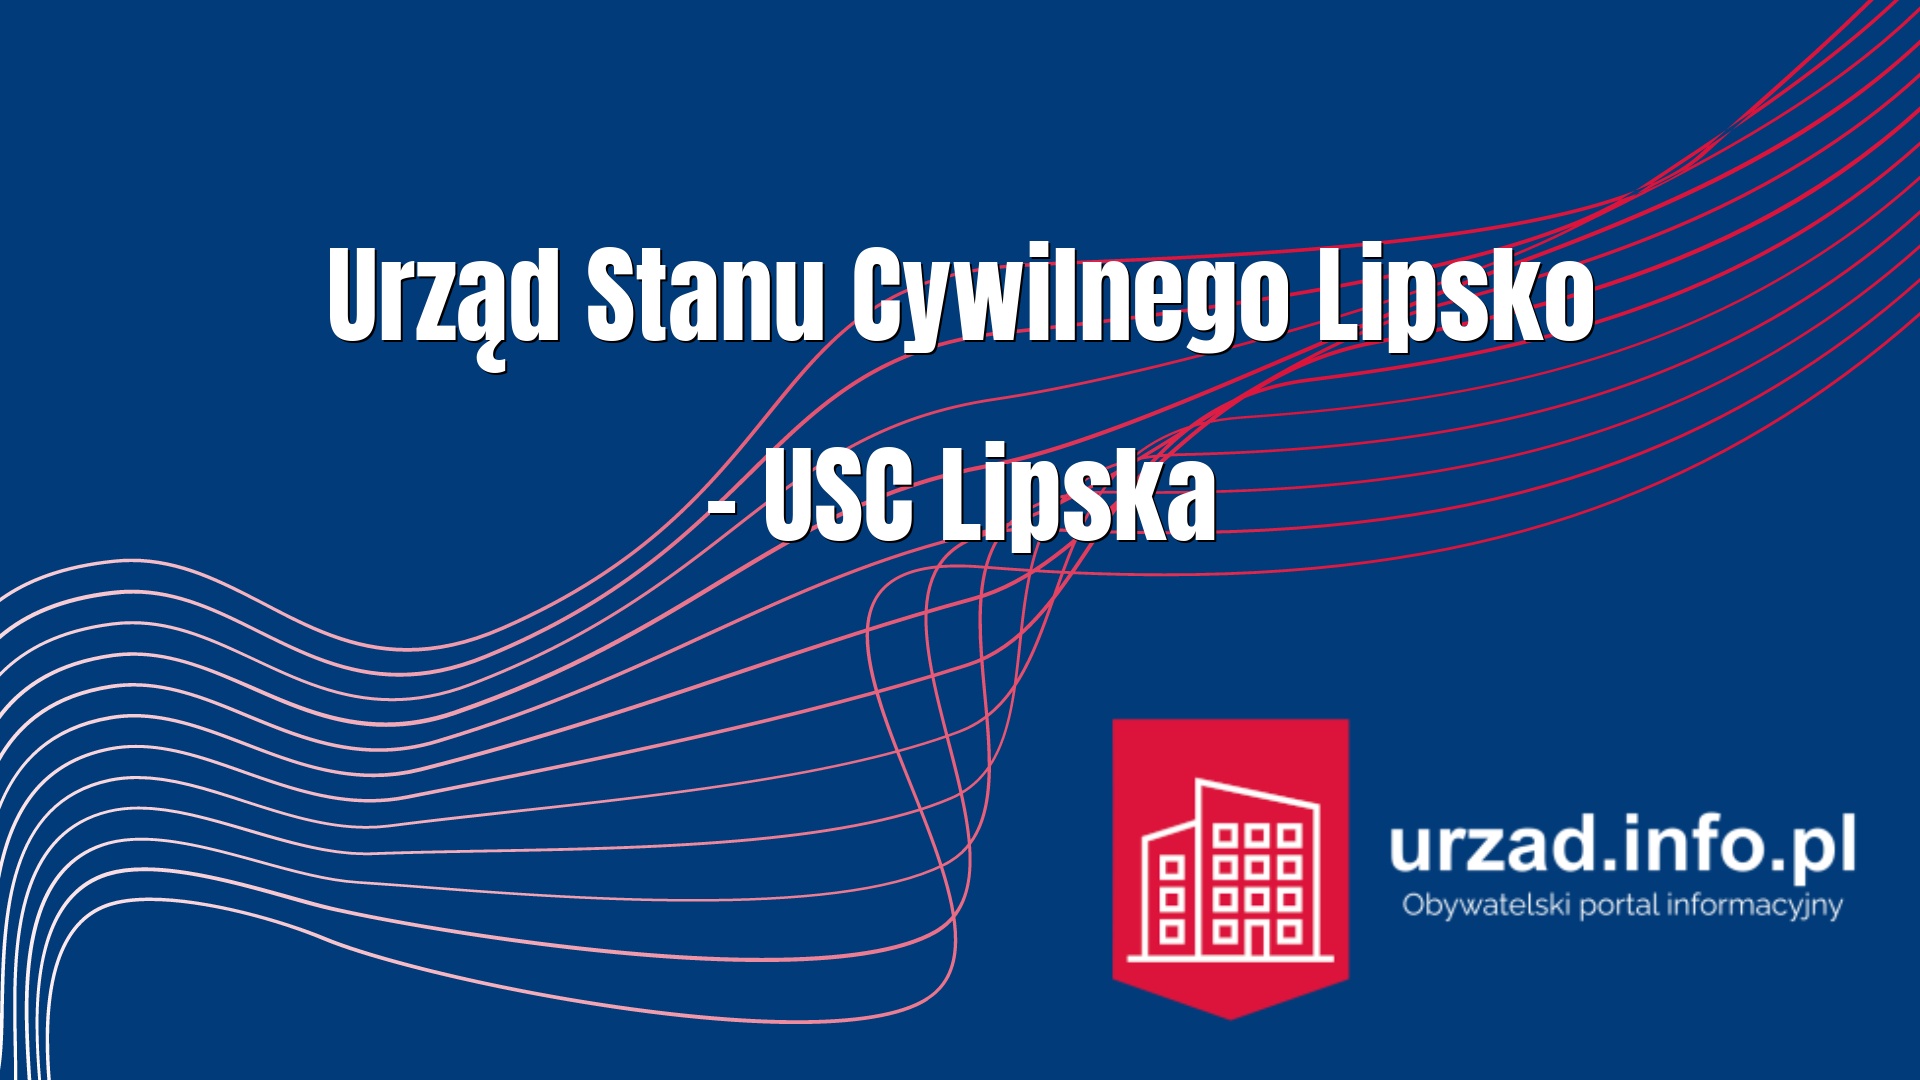 Urząd Stanu Cywilnego Lipsko – USC Lipska